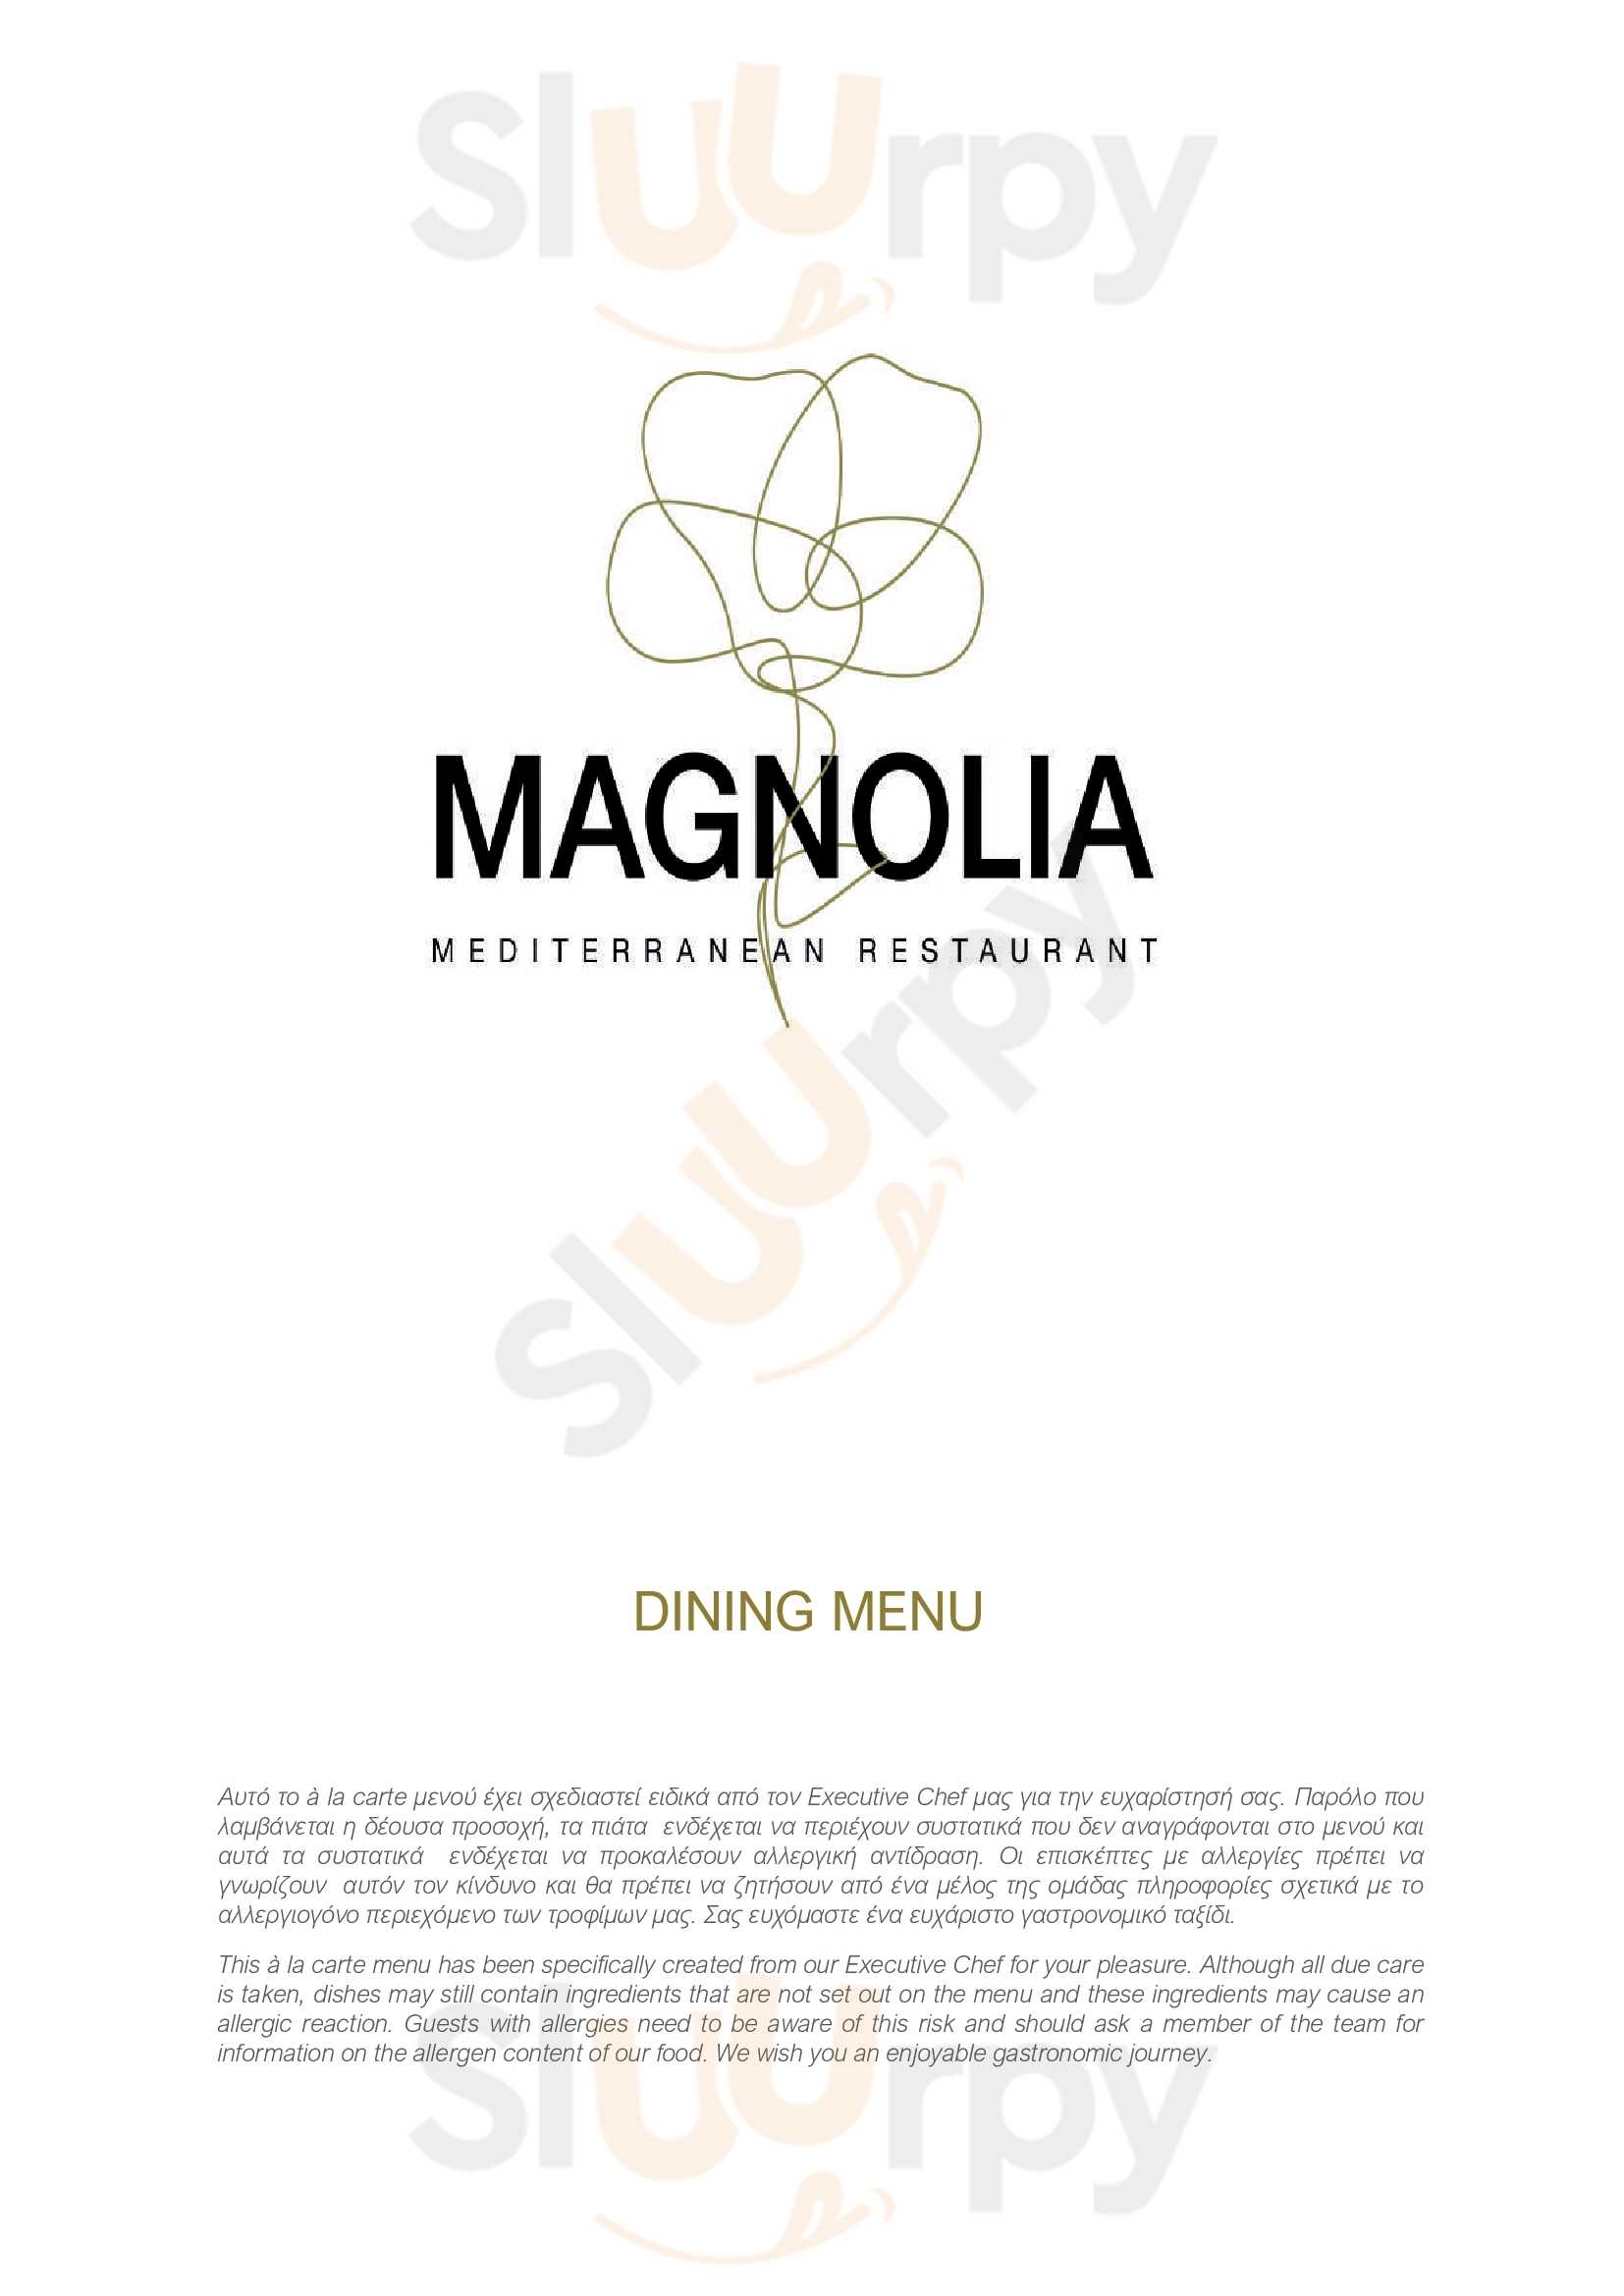 Magnolia Mediterranean Restaurant Κασσάνδρα Παλλάς Menu - 1